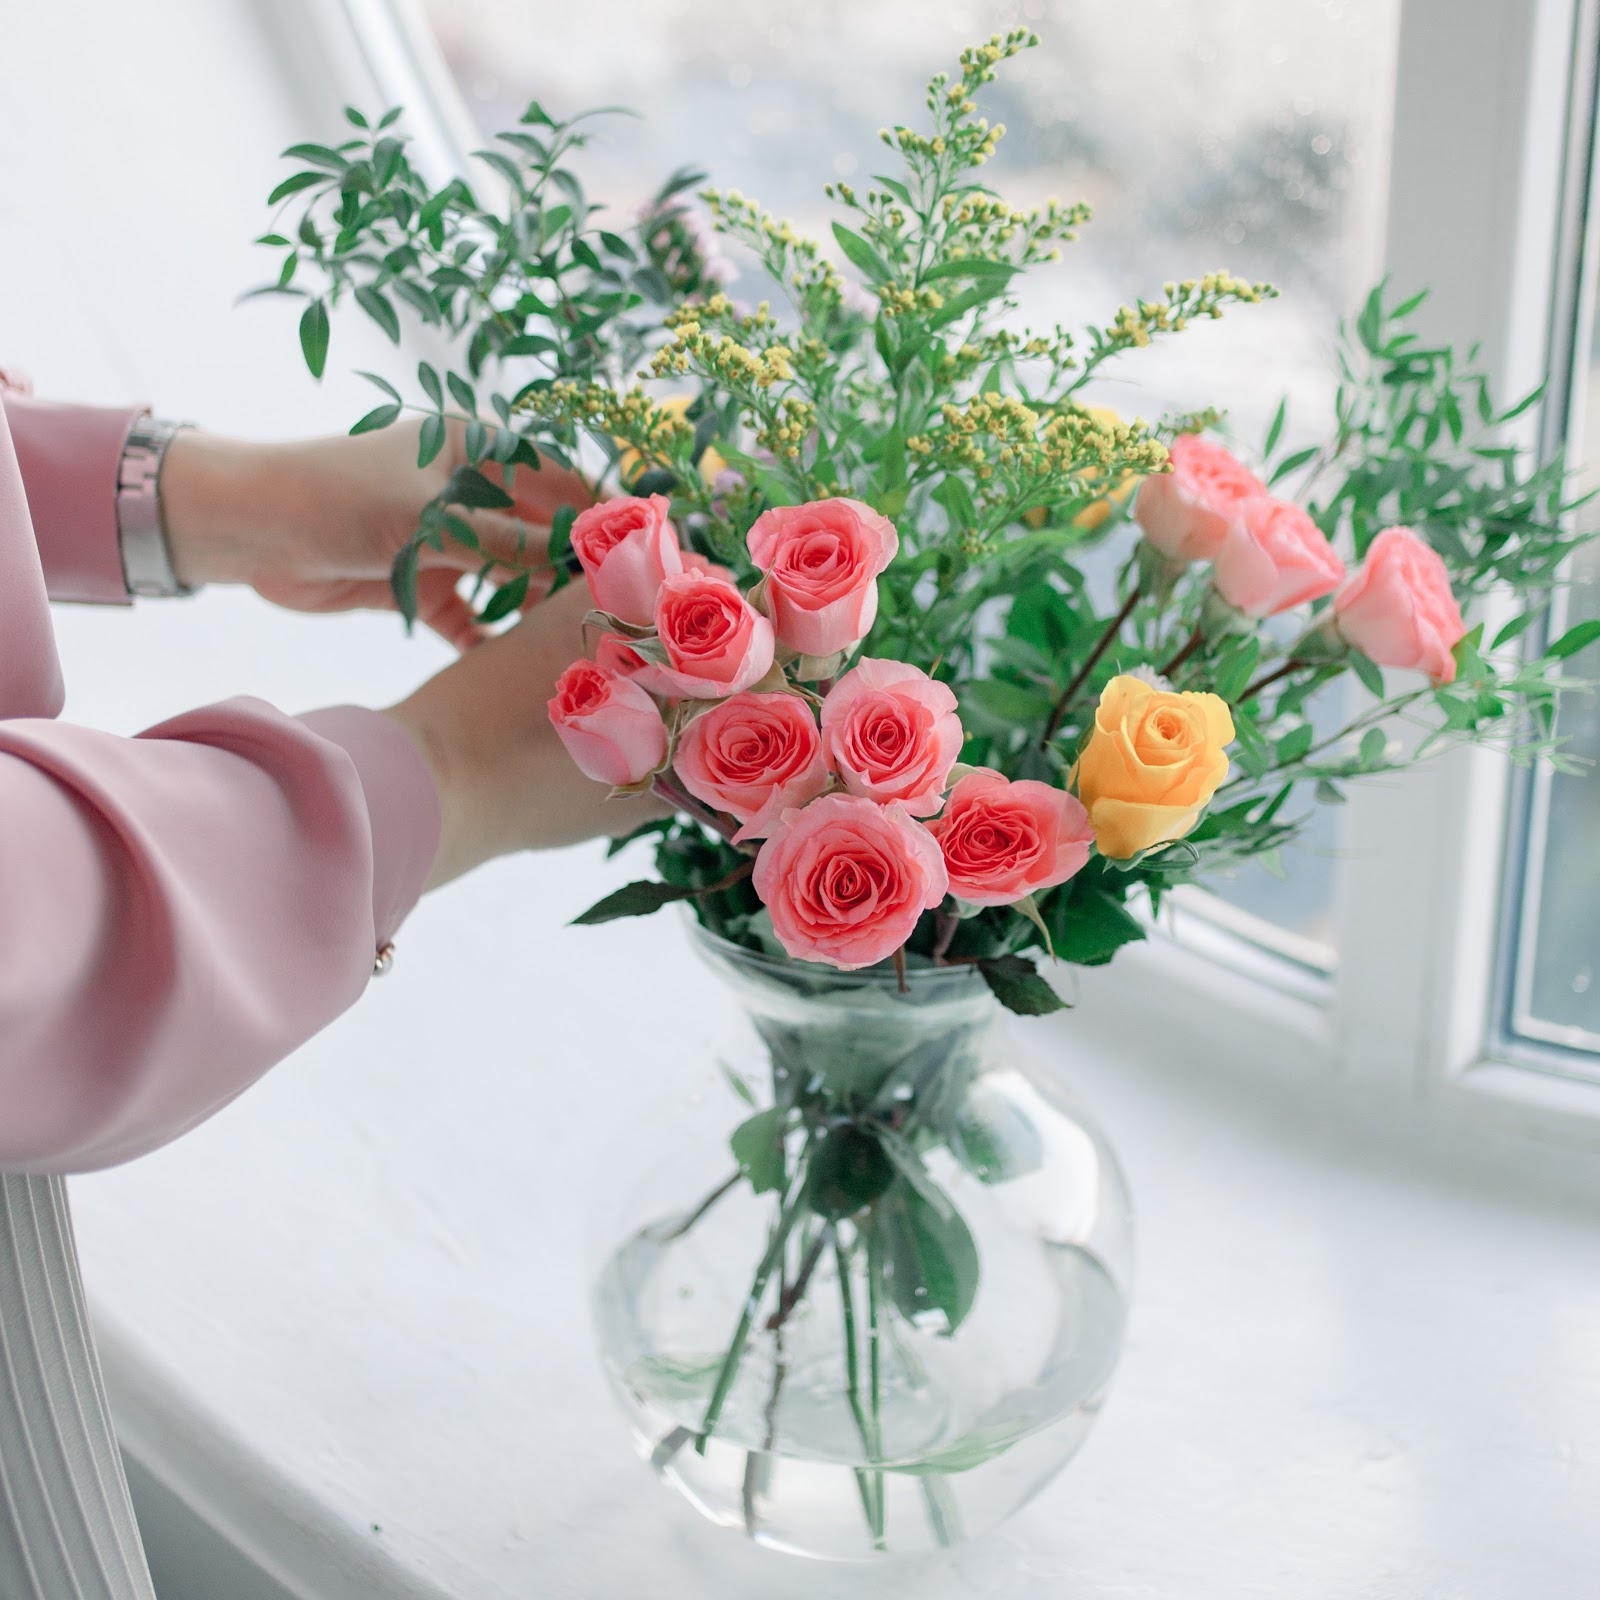 Как ухаживать за комнатной розой – с этими советами твоя королева цветов будет прекрасной